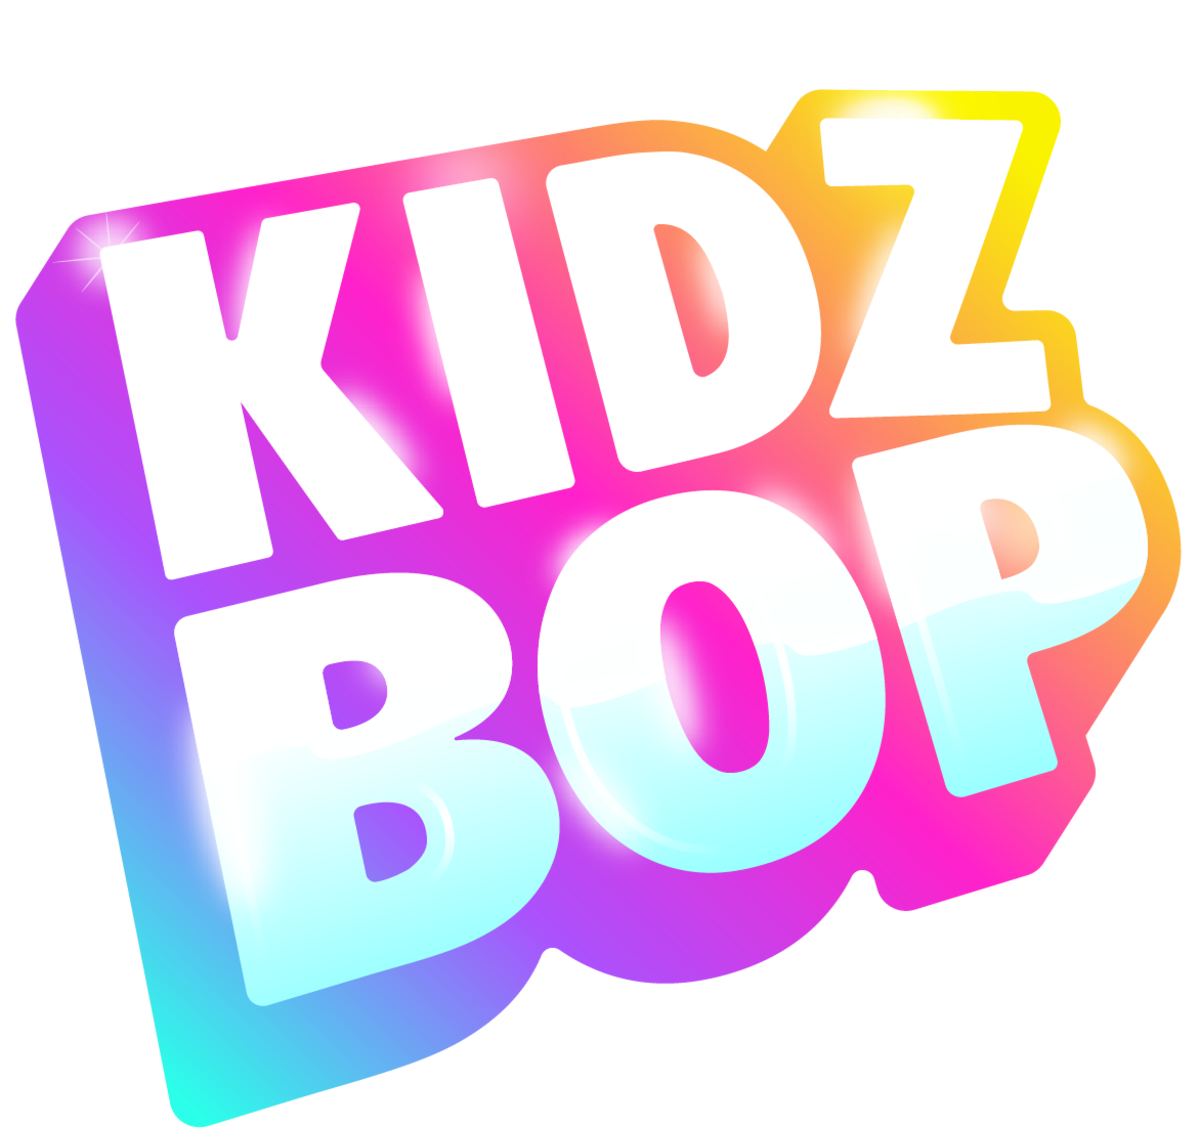 Kidz Bop Kids - Kidz Bop, Vol. 8 [Bonus Track]